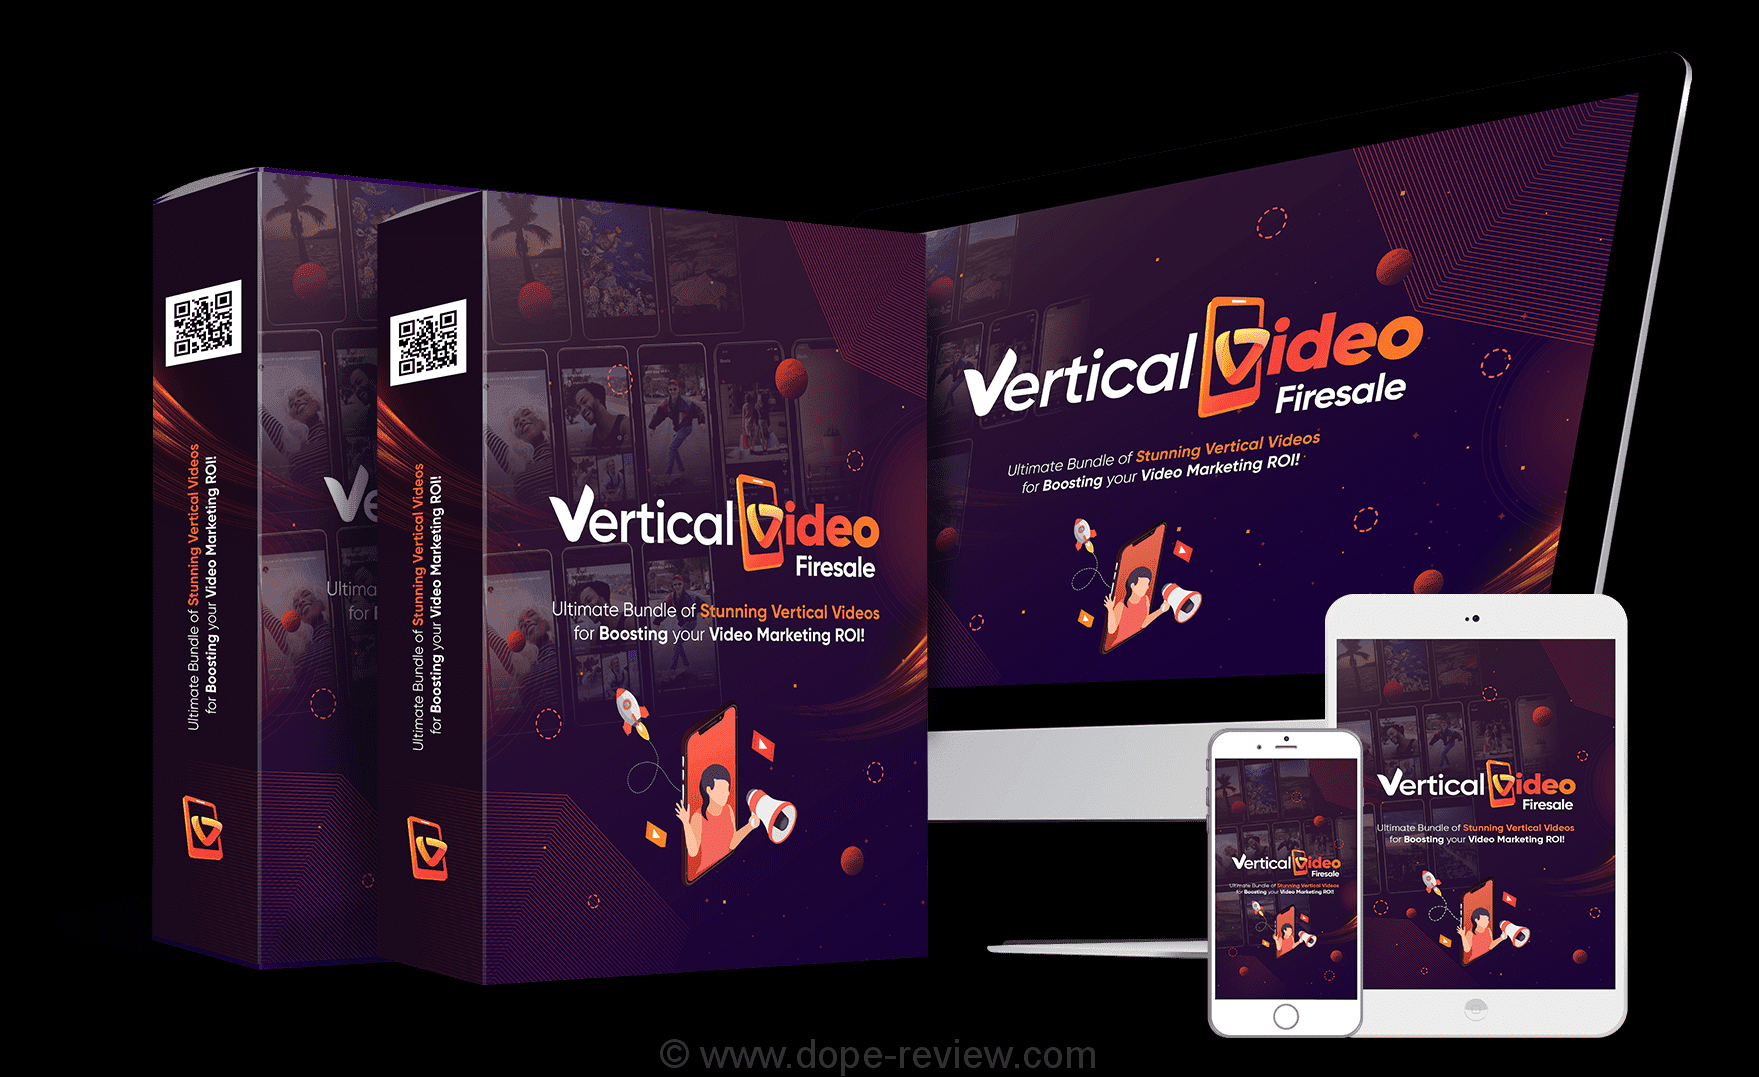 Vertical Video Firesale